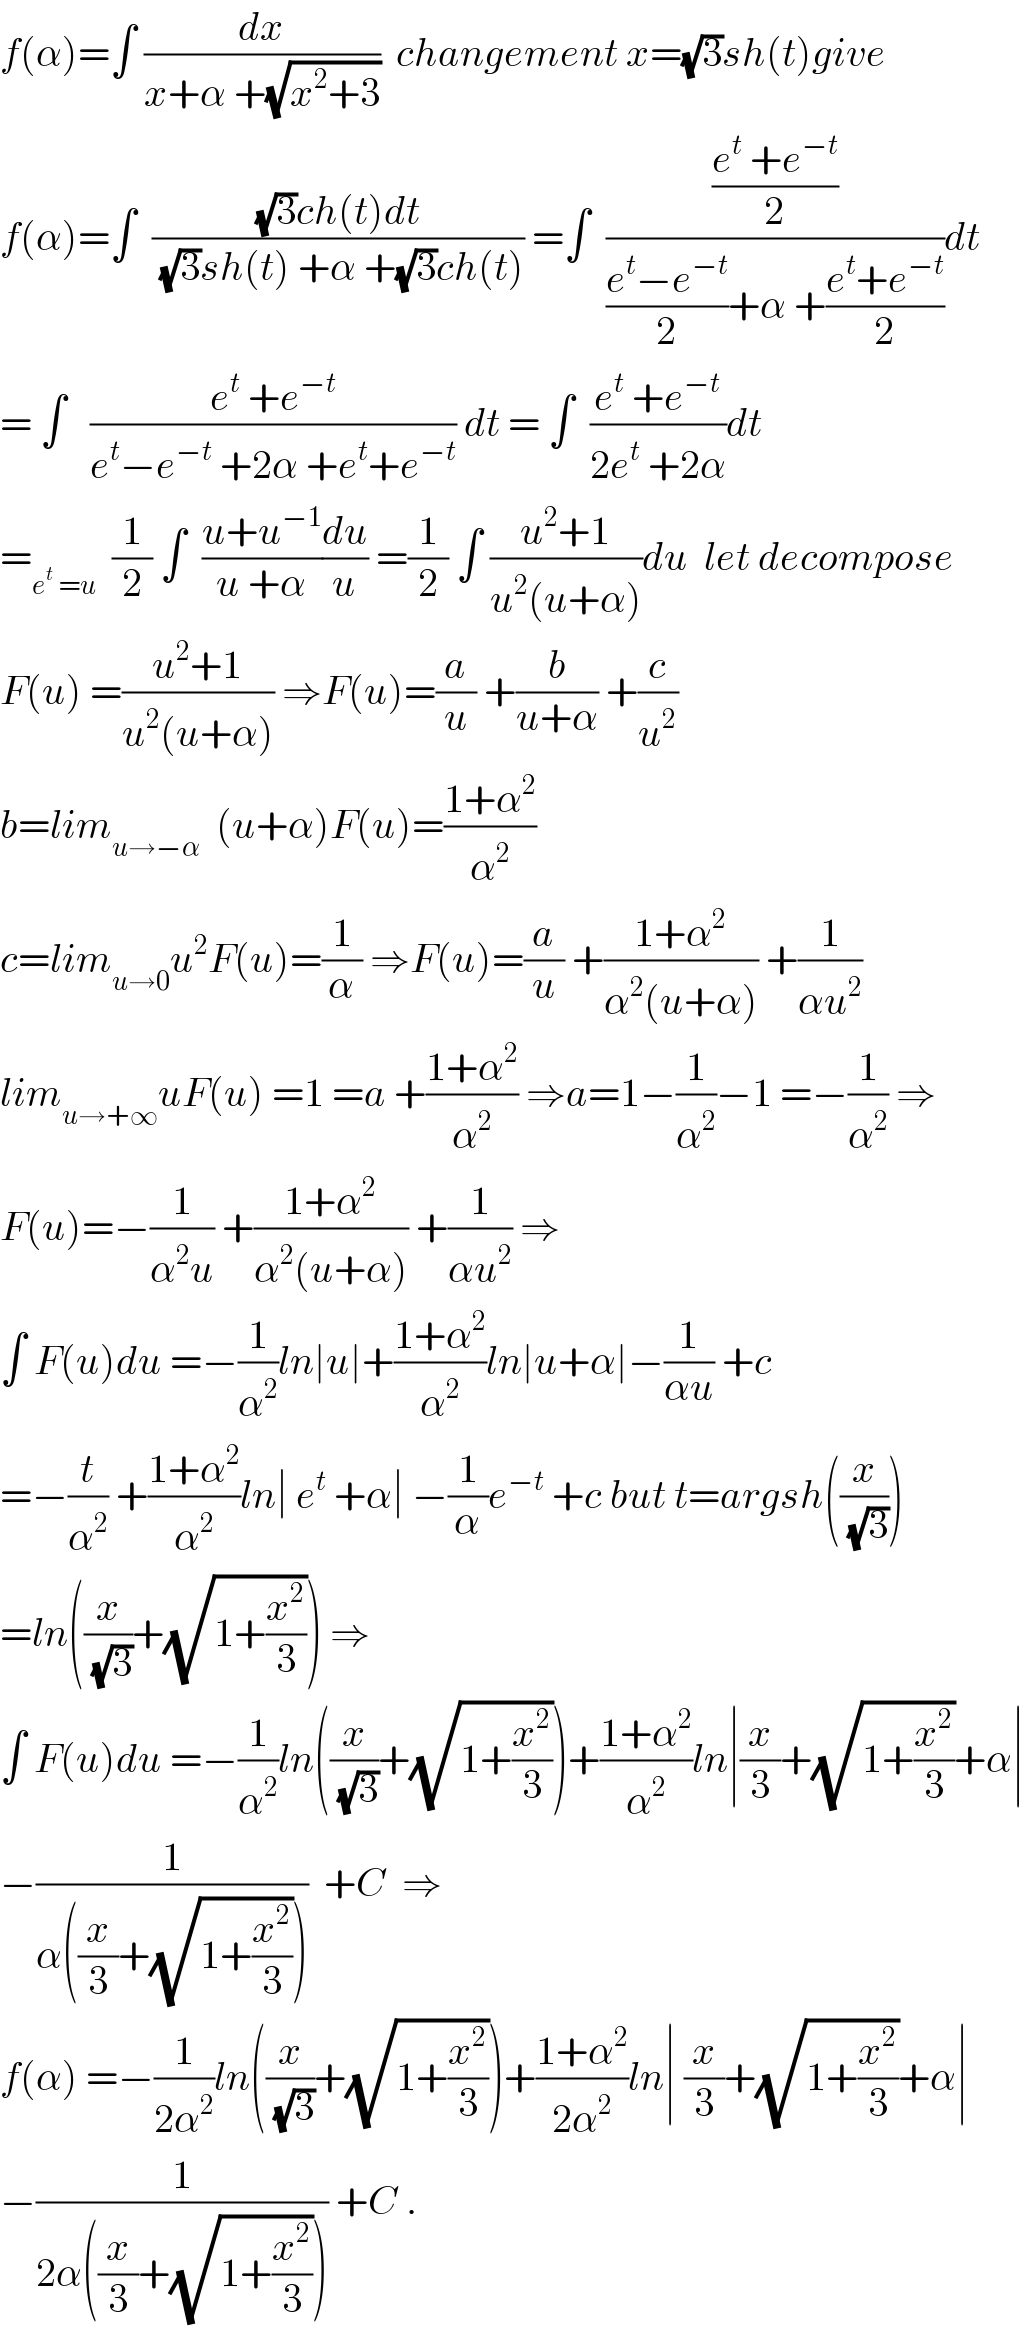 f(α)=∫ (dx/(x+α +(√(x^2 +3))))  changement x=(√3)sh(t)give  f(α)=∫  (((√3)ch(t)dt)/((√3)sh(t) +α +(√3)ch(t))) =∫  (((e^t  +e^(−t) )/2)/(((e^t −e^(−t) )/2)+α +((e^t +e^(−t) )/2)))dt  = ∫   ((e^t  +e^(−t) )/(e^t −e^(−t)  +2α +e^t +e^(−t) )) dt = ∫  ((e^t  +e^(−t) )/(2e^t  +2α))dt  =_(e^t  =u)   (1/2) ∫  ((u+u^(−1) )/(u +α))(du/u) =(1/2) ∫ ((u^2 +1)/(u^2 (u+α)))du  let decompose  F(u) =((u^2 +1)/(u^2 (u+α))) ⇒F(u)=(a/u) +(b/(u+α)) +(c/u^2 )  b=lim_(u→−α)   (u+α)F(u)=((1+α^2 )/α^2 )  c=lim_(u→0) u^2 F(u)=(1/α) ⇒F(u)=(a/u) +((1+α^2 )/(α^2 (u+α))) +(1/(αu^2 ))  lim_(u→+∞) uF(u) =1 =a +((1+α^2 )/α^2 ) ⇒a=1−(1/α^2 )−1 =−(1/α^2 ) ⇒  F(u)=−(1/(α^2 u)) +((1+α^2 )/(α^2 (u+α))) +(1/(αu^2 )) ⇒  ∫ F(u)du =−(1/α^2 )ln∣u∣+((1+α^2 )/α^2 )ln∣u+α∣−(1/(αu)) +c  =−(t/α^2 ) +((1+α^2 )/α^2 )ln∣ e^t  +α∣ −(1/α)e^(−t)  +c but t=argsh((x/(√3)))  =ln((x/(√3))+(√(1+(x^2 /3)))) ⇒  ∫ F(u)du =−(1/α^2 )ln((x/(√3))+(√(1+(x^2 /3))))+((1+α^2 )/α^2 )ln∣(x/3)+(√(1+(x^2 /3)))+α∣  −(1/(α((x/3)+(√(1+(x^2 /3))))))  +C  ⇒  f(α) =−(1/(2α^2 ))ln((x/(√3))+(√(1+(x^2 /3))))+((1+α^2 )/(2α^2 ))ln∣ (x/3)+(√(1+(x^2 /3)))+α∣  −(1/(2α((x/3)+(√(1+(x^2 /3)))))) +C .  